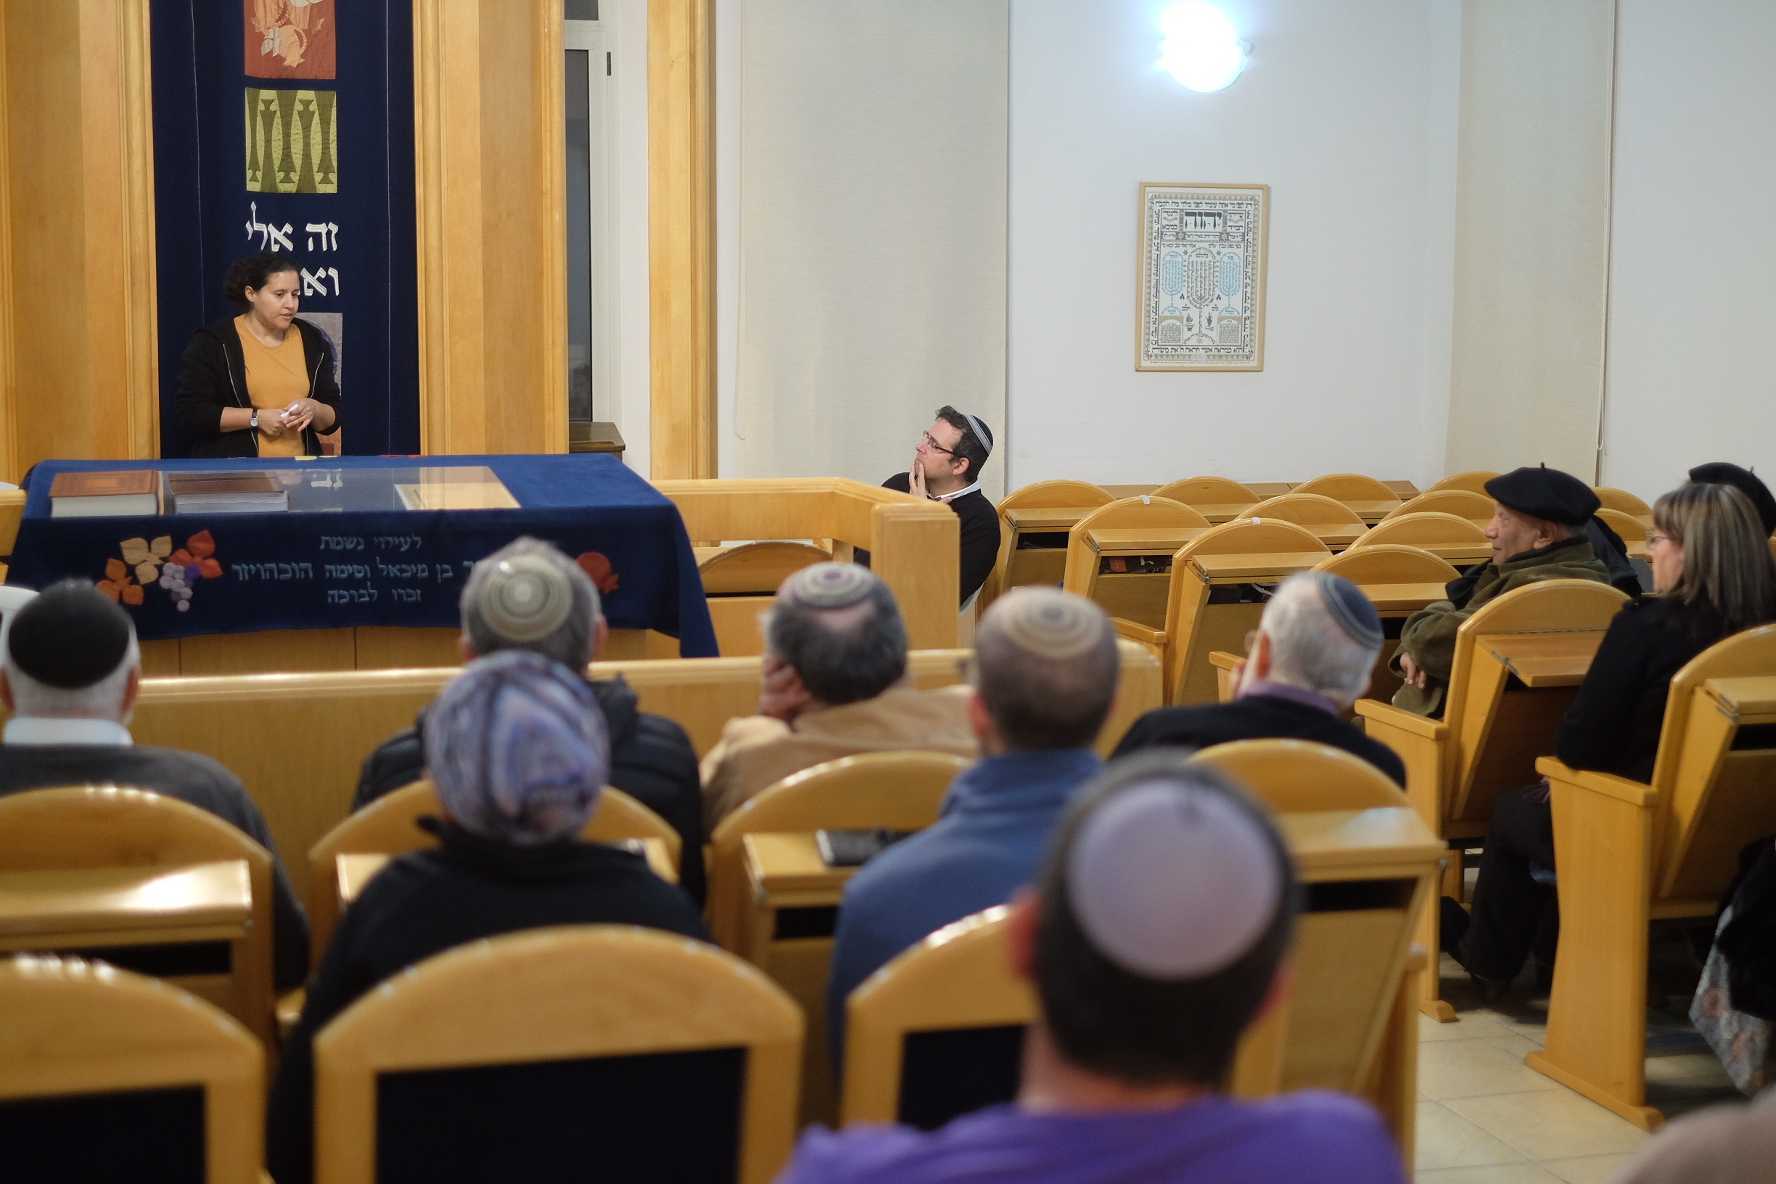 אישה דתייה מדברת על המאבק שלה עם בריאות הנפש בבית הכנסת נווה הברון בזיכרון יעקב, 22 בינואר 2023 (צילום: יהודה ארי גרוס)